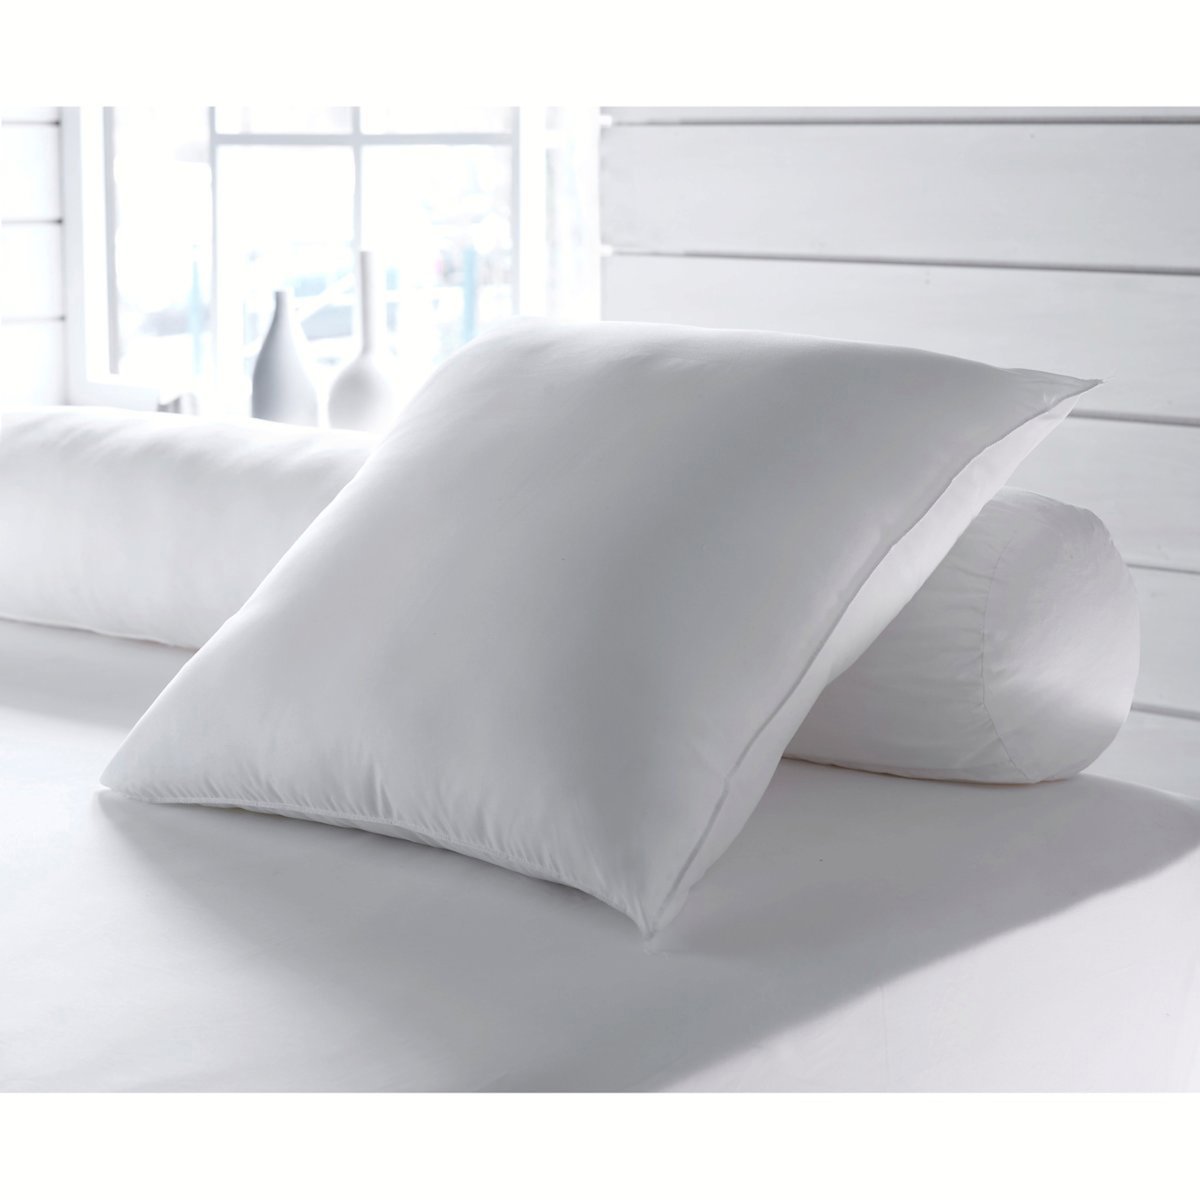 Одеяло La Redoute Экологичное синтетическое с обработкой против клещей Proneem стандартное качество 240 x 220 см белый, размер 240 x 220 см - фото 2